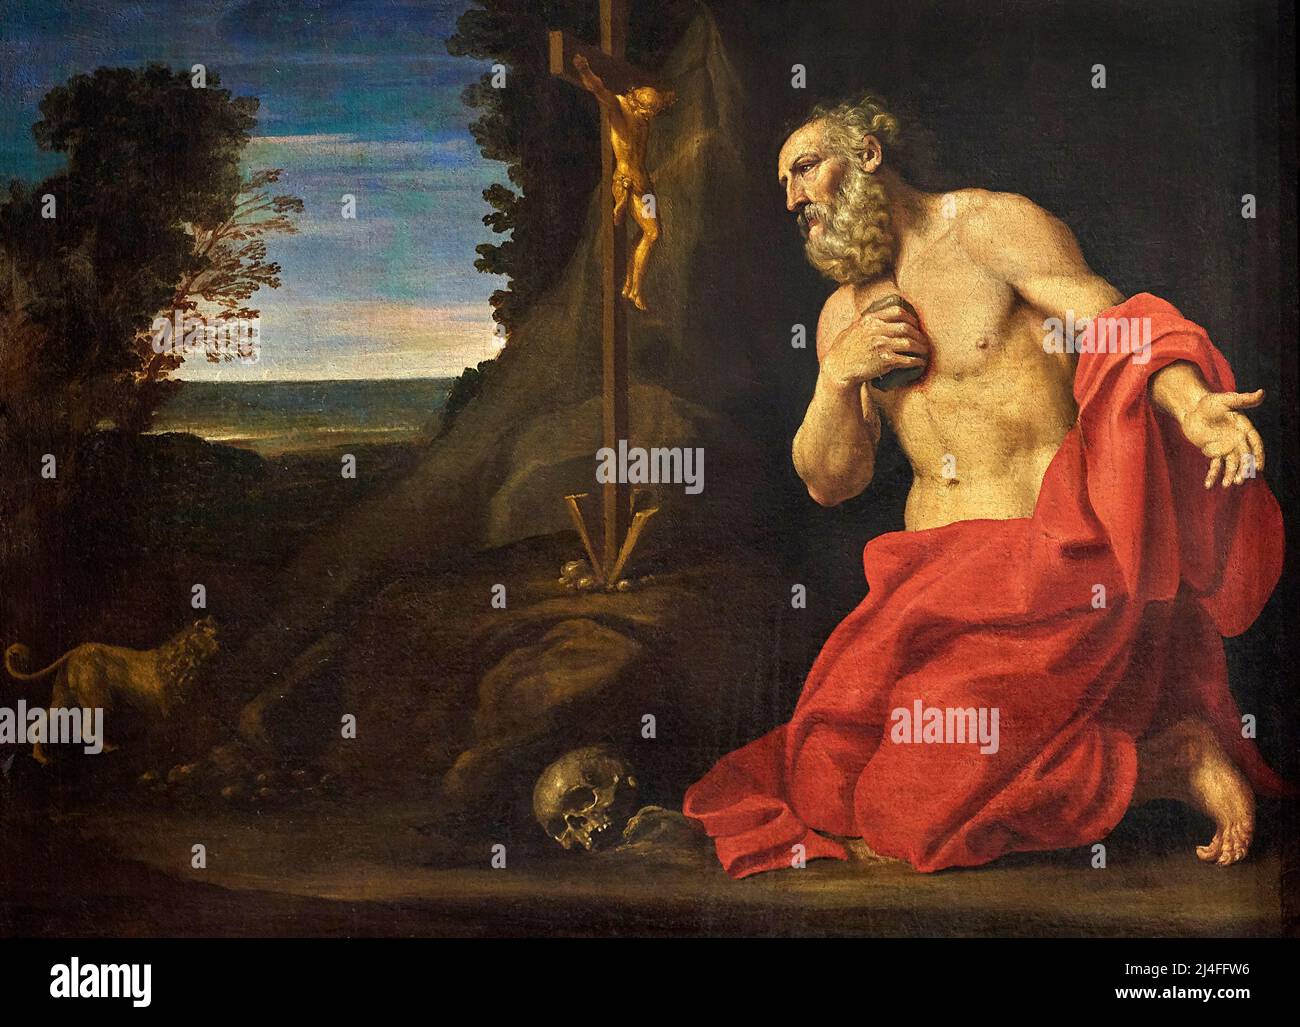 San Girolamo in preghiera  - olio su tela - Lucio Massari   - 1633 - Modena, Museo Civico d’Arte Stock Photo